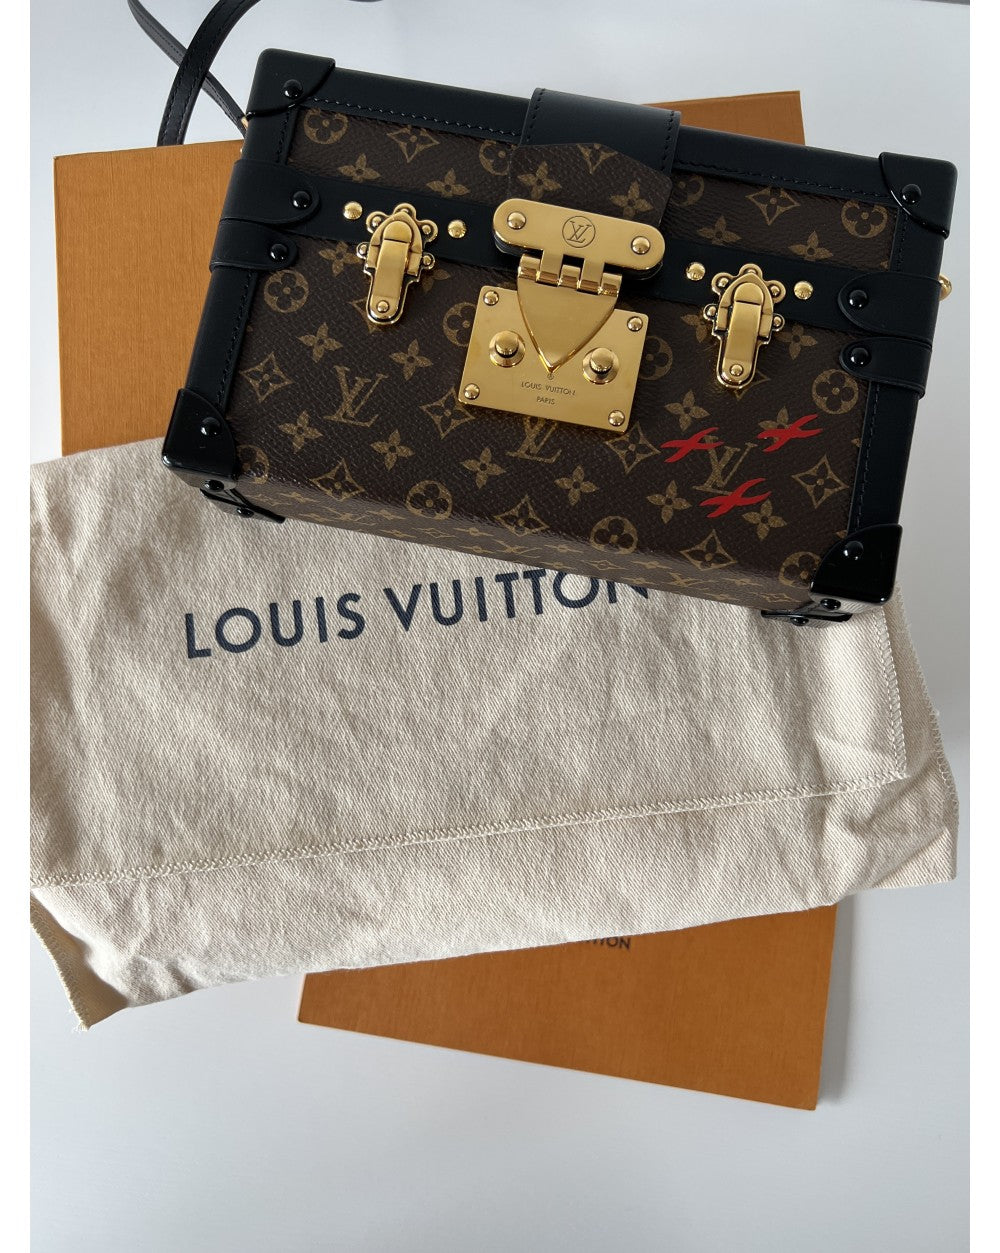 LOUIS VUITTON Petite Malle Canvas Small Size Brown Color Bag LV-1934-WBG